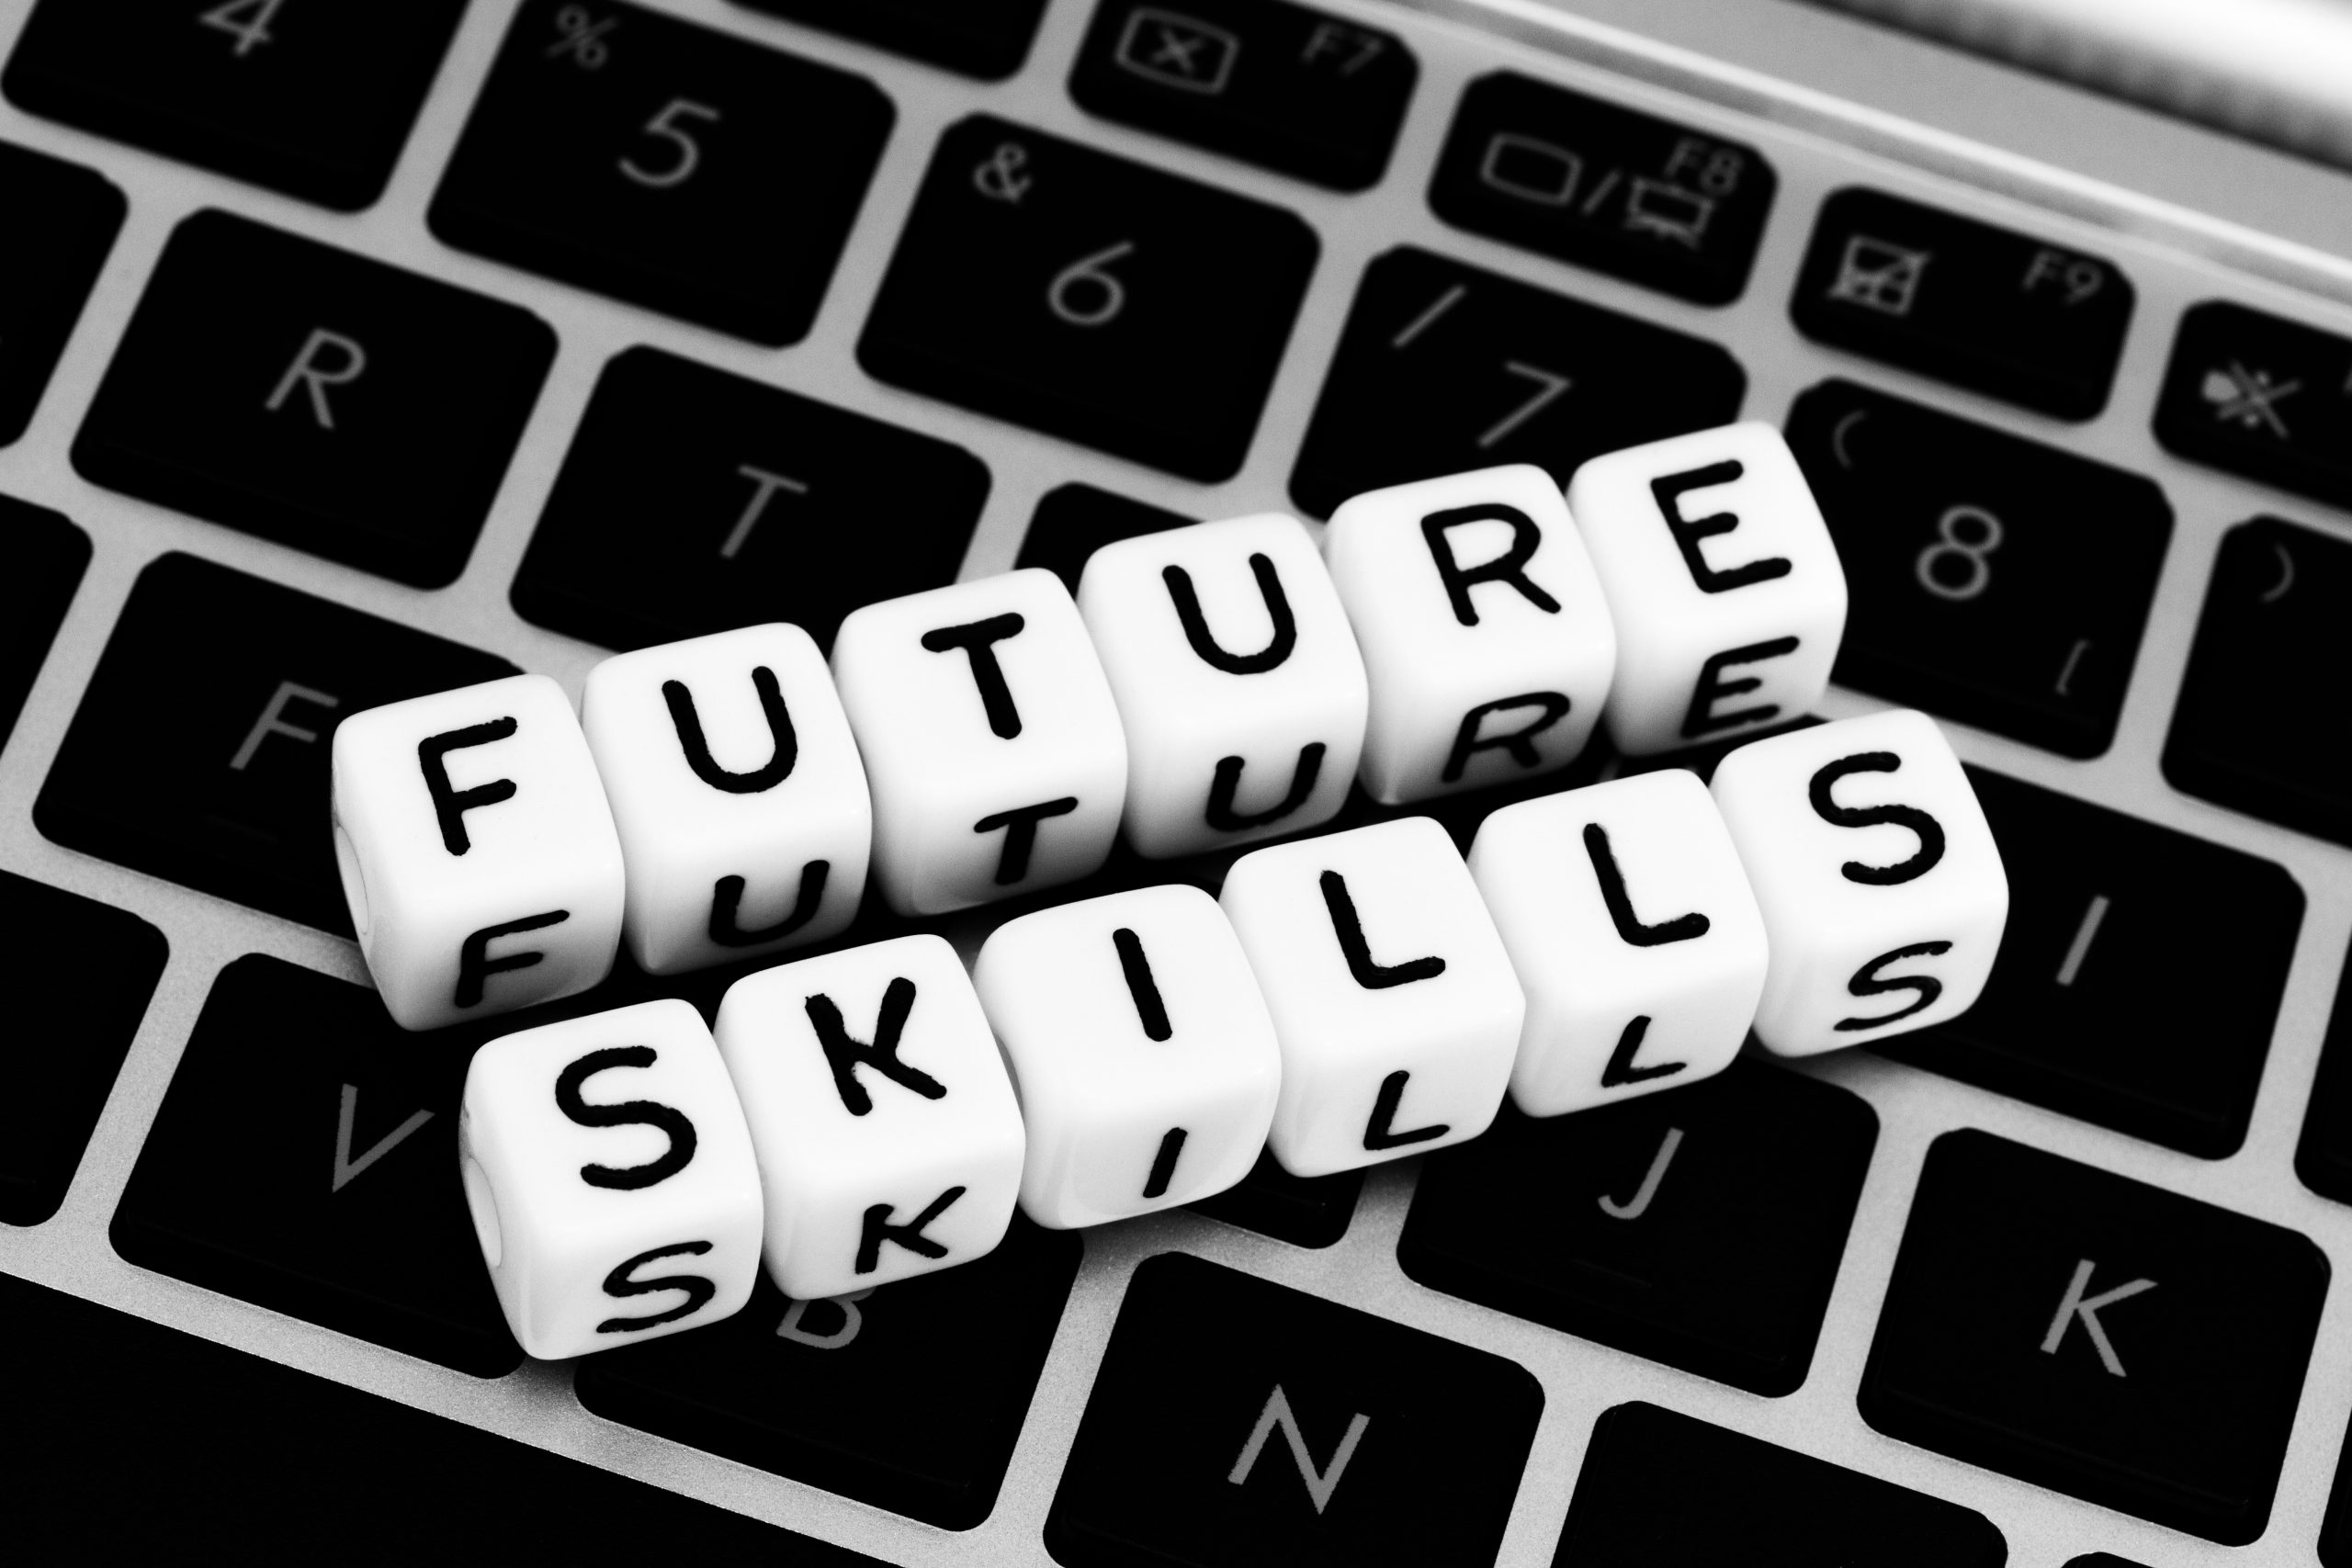 Buchstabenwürfel, die Worte "Future Skills" ergeben, liegen auf einer Tastatur